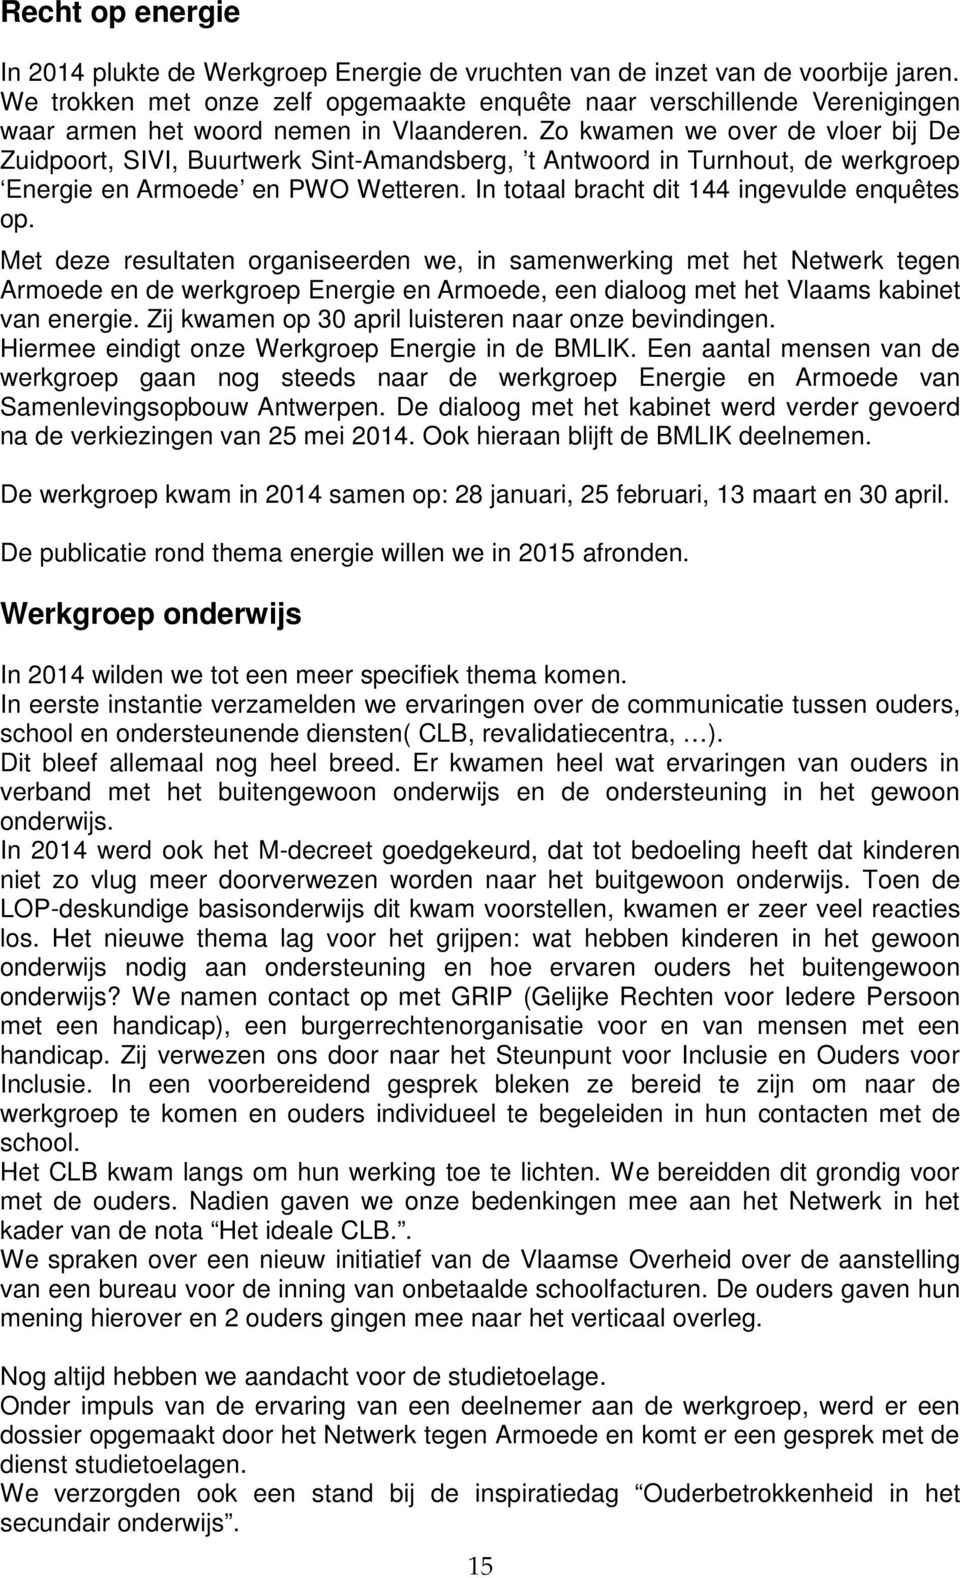 Zo kwamen we over de vloer bij De Zuidpoort, SIVI, Buurtwerk Sint-Amandsberg, t Antwoord in Turnhout, de werkgroep Energie en Armoede en PWO Wetteren. In totaal bracht dit 144 ingevulde enquêtes op.